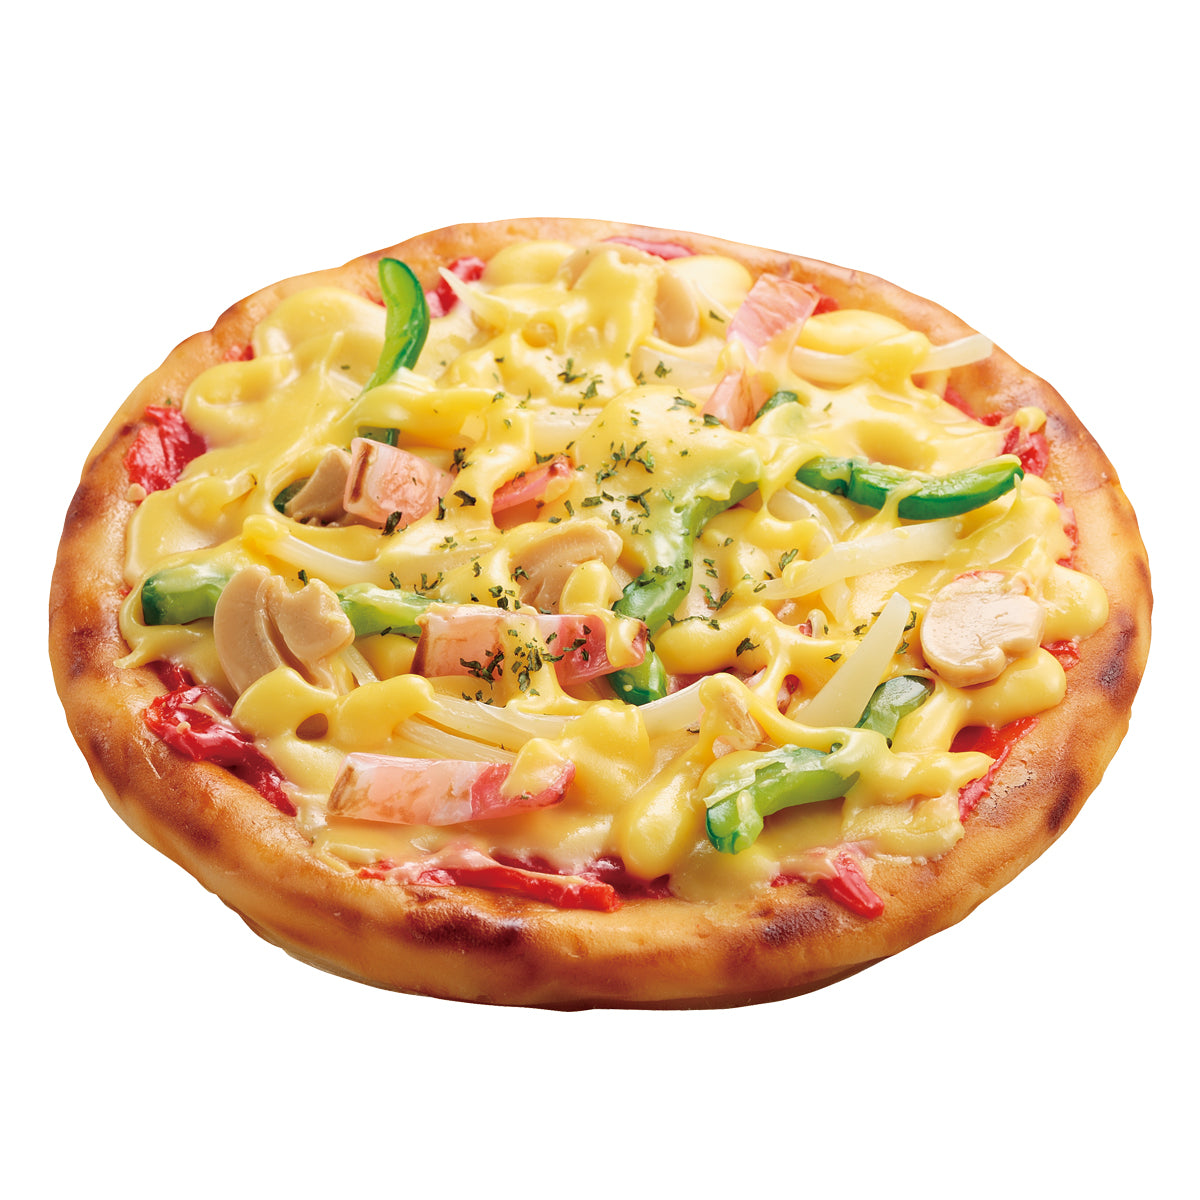 自分でつくる食品サンプル製作キット「さんぷるんvol.2 ミックスピザ」の完成イメージ画像です。